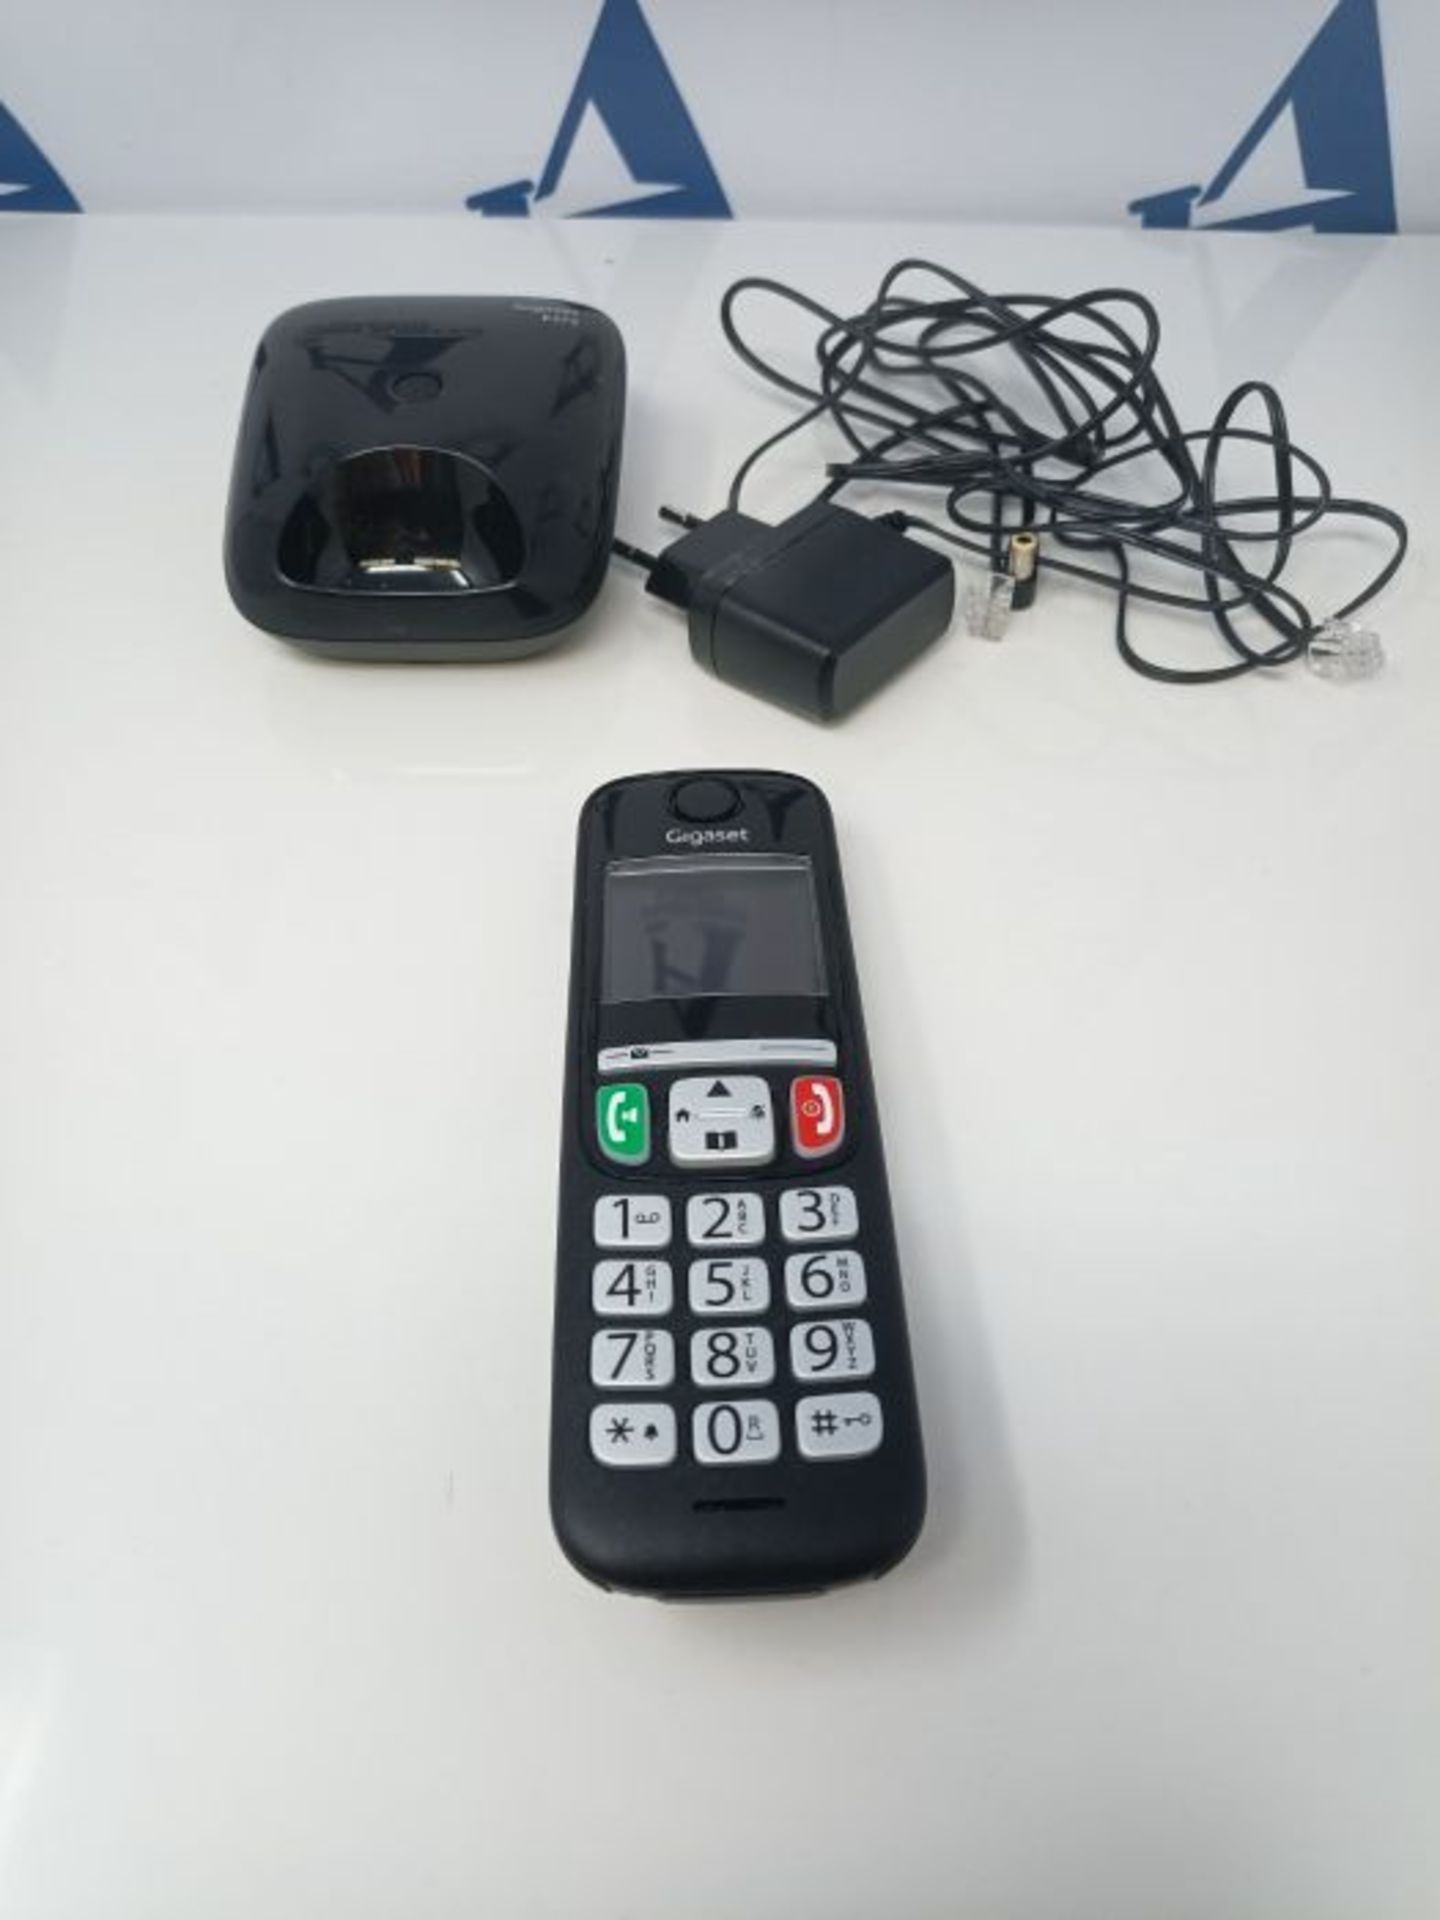 Gigaset E275 Il nuovo telefono cordless dai tasti grandi, numeri grandi e suonerie for - Image 2 of 2